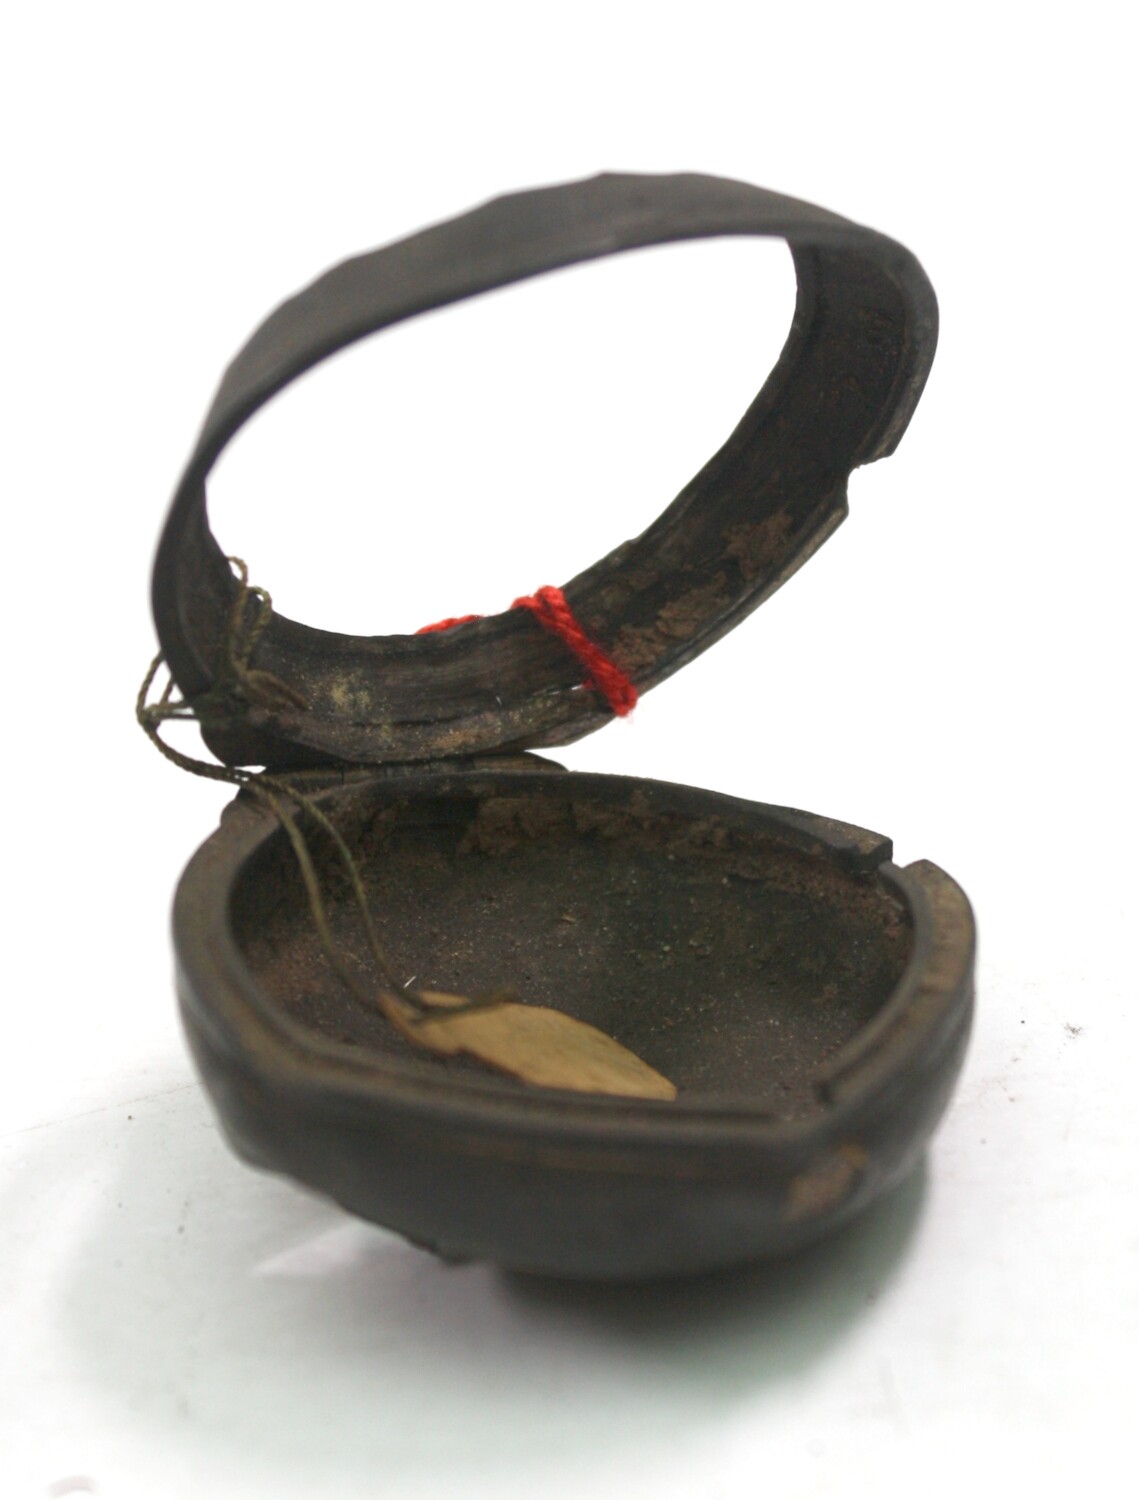 Uhrkapsel einer Taschenuhr (Drilandmuseum CC BY-NC-SA)